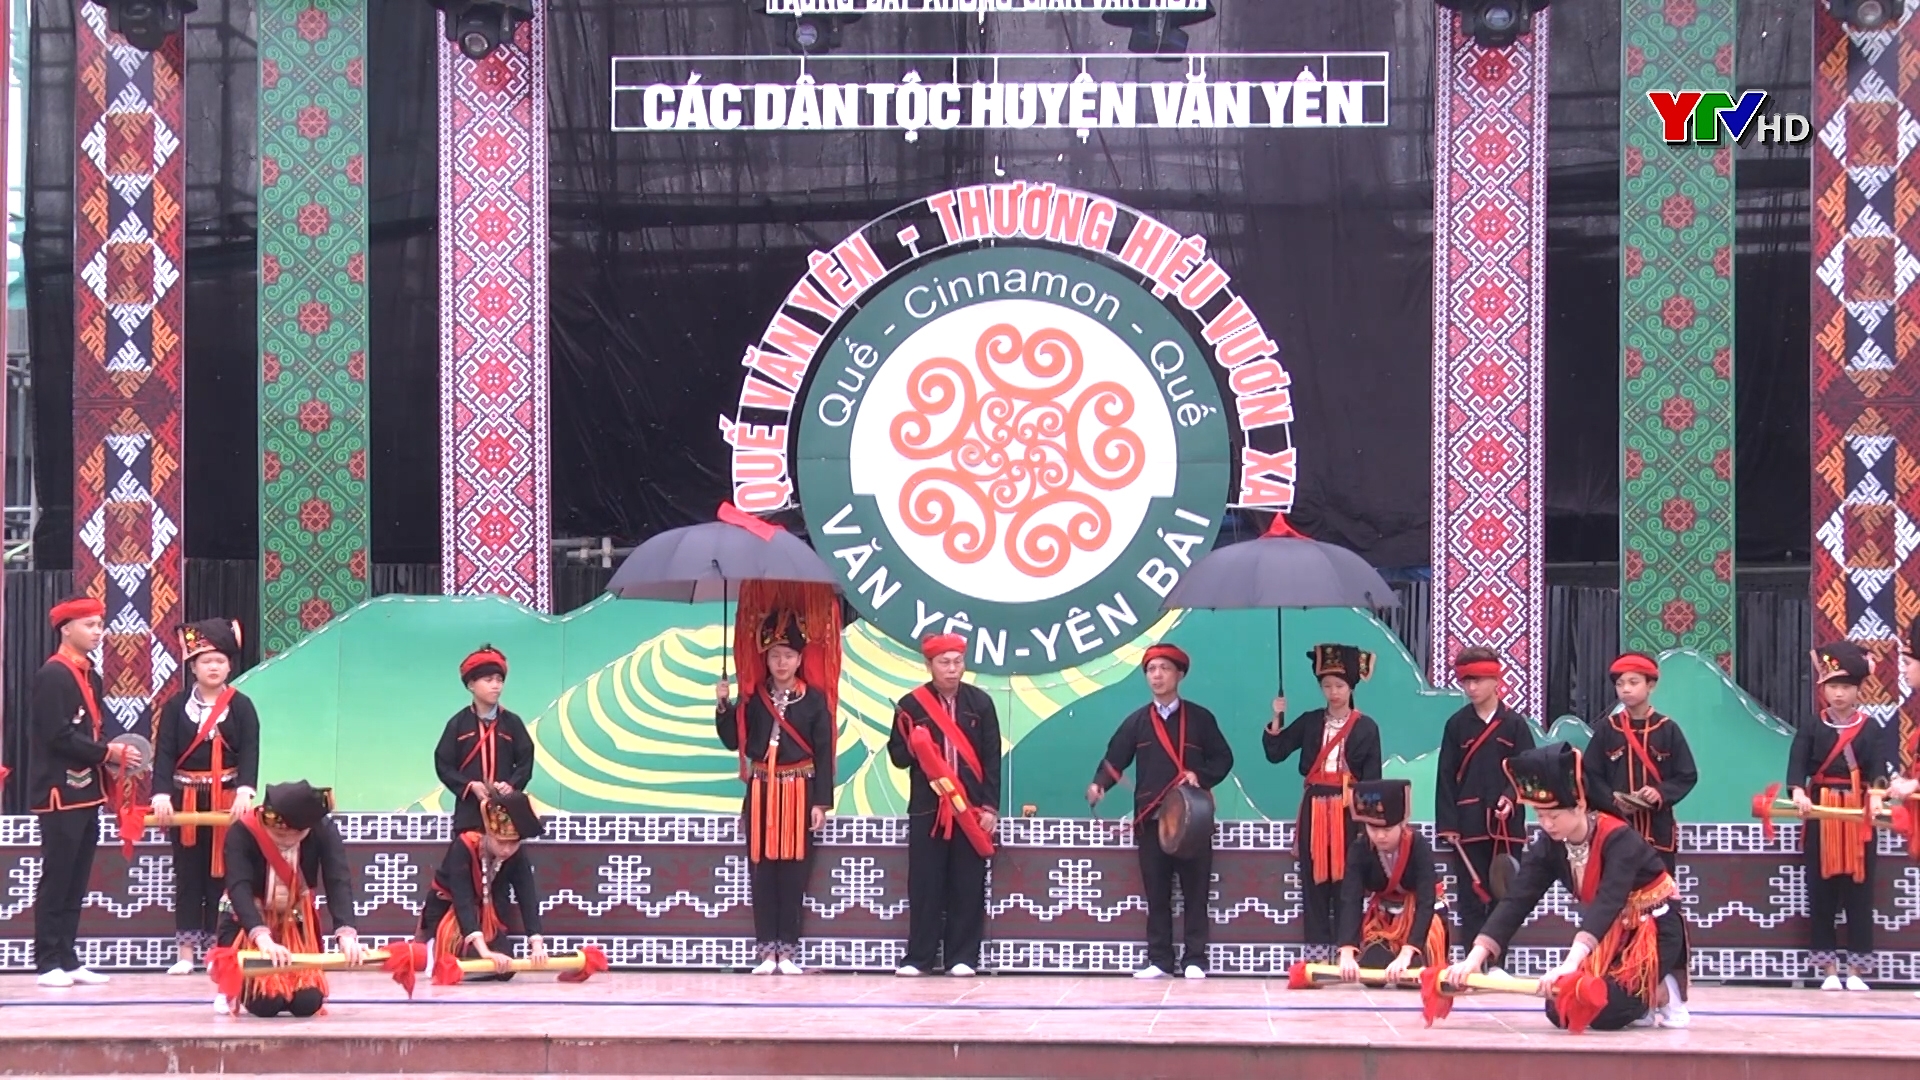 Khai mạc trưng bày "Không gian văn hóa các dân tộc huyện Văn Yên"